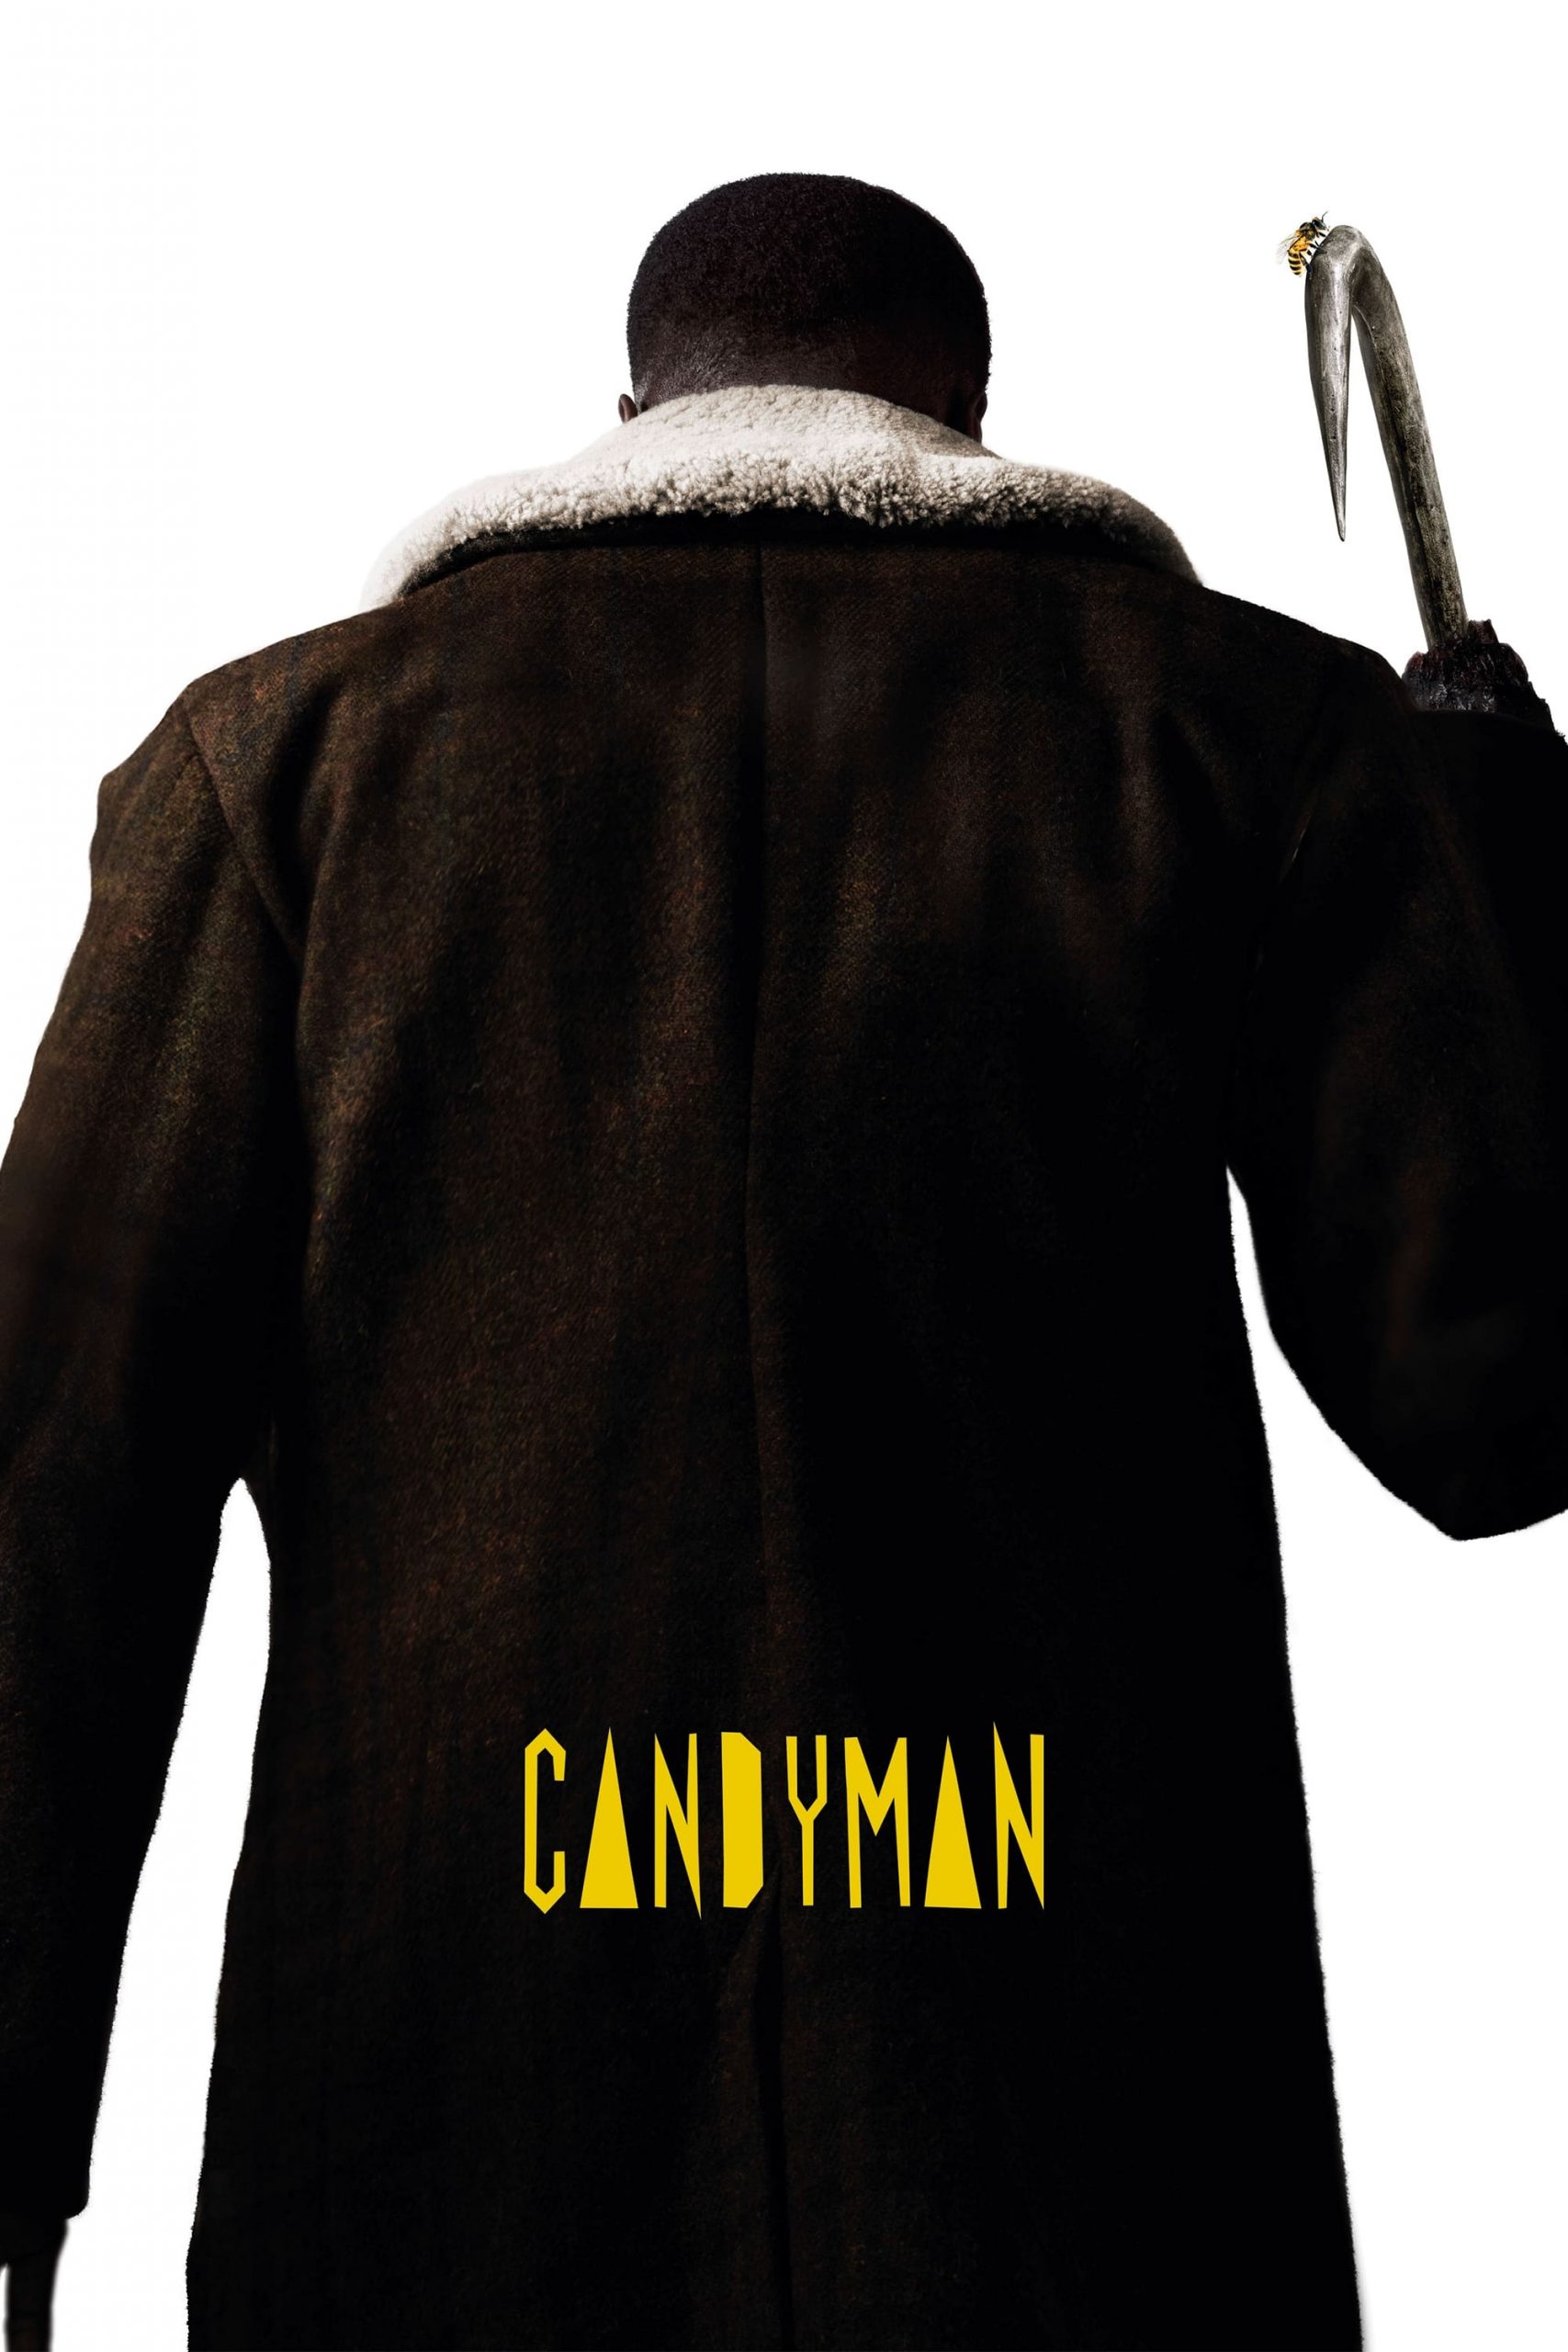 مشاهدة فيلم Candyman 2021 مترجم